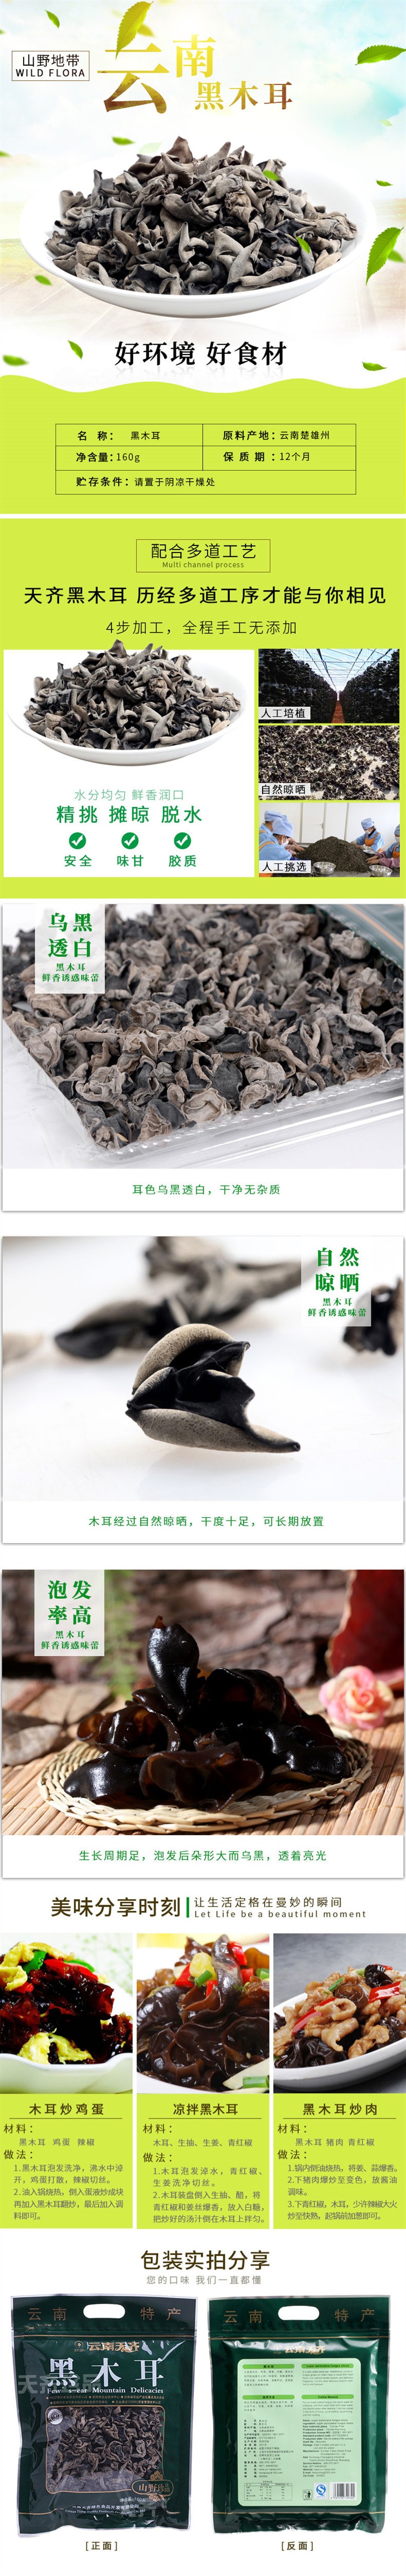 Yunnan specialty Black fungus 150g